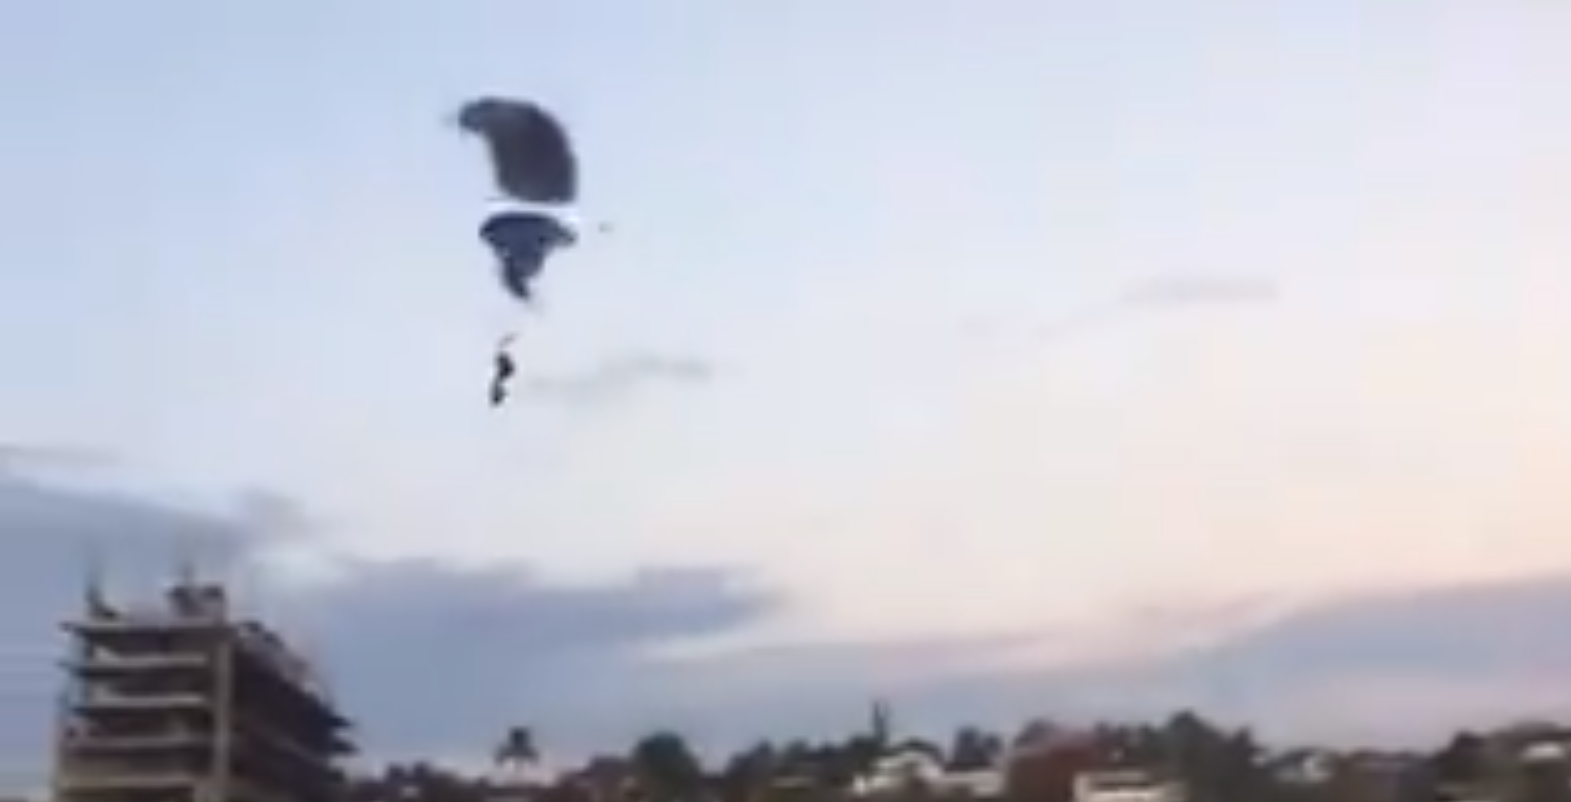 Un fallecido tras choque entre paracaidistas en México (video)